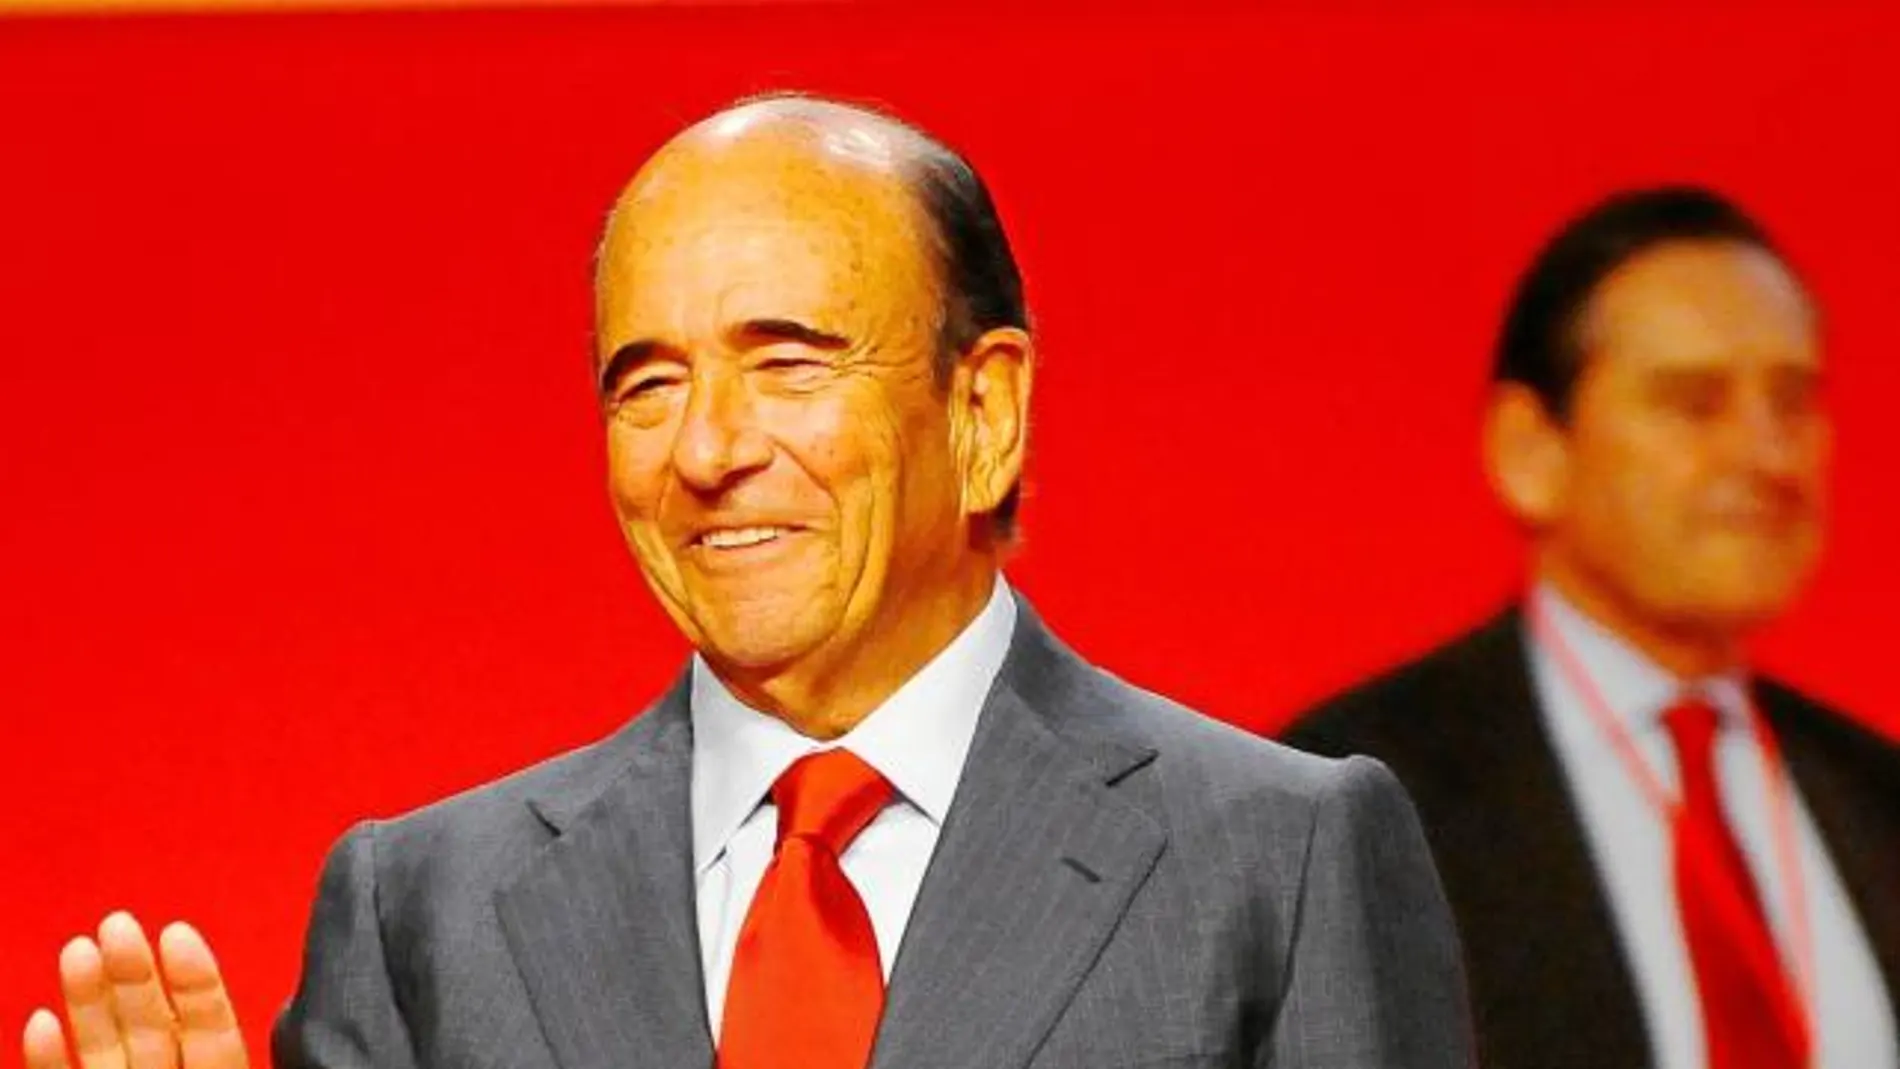 El Banco Santander, que preside Emilio Botín, celebró ayer su junta de accionistas en la capital cántabra